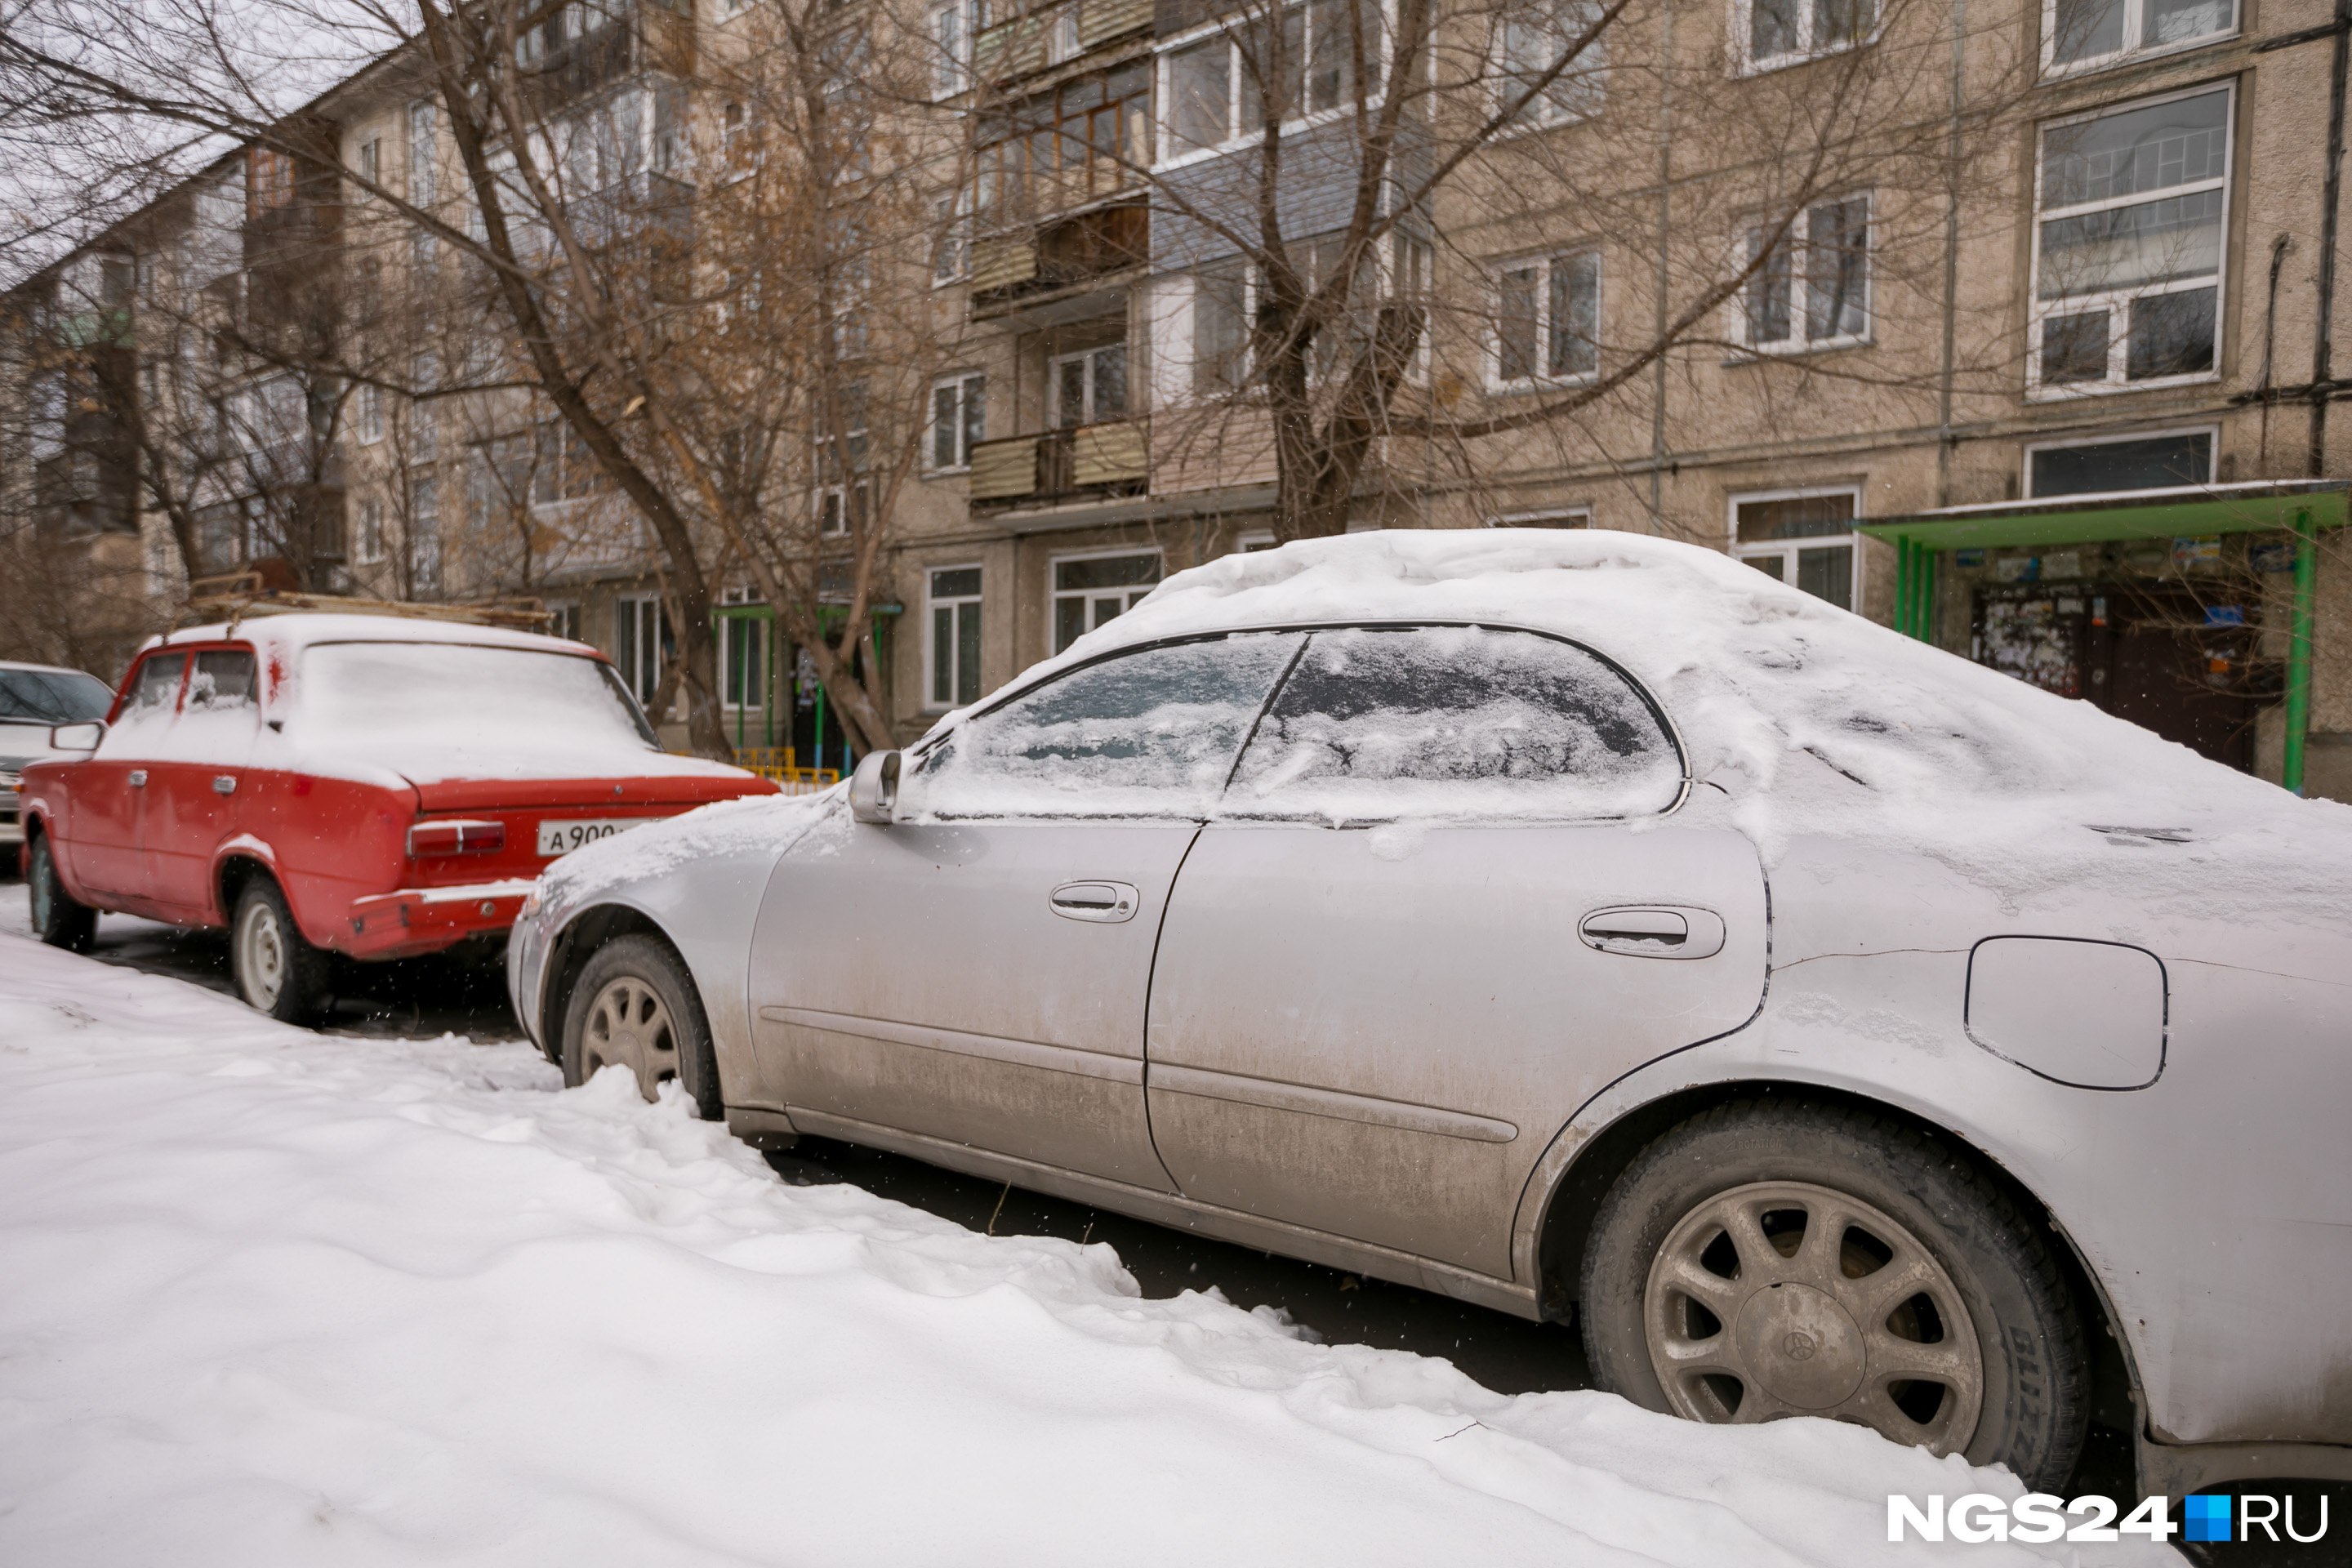 Владелец случайно выбранной заметенной снегом машины оказался неплательщиком по кредиту